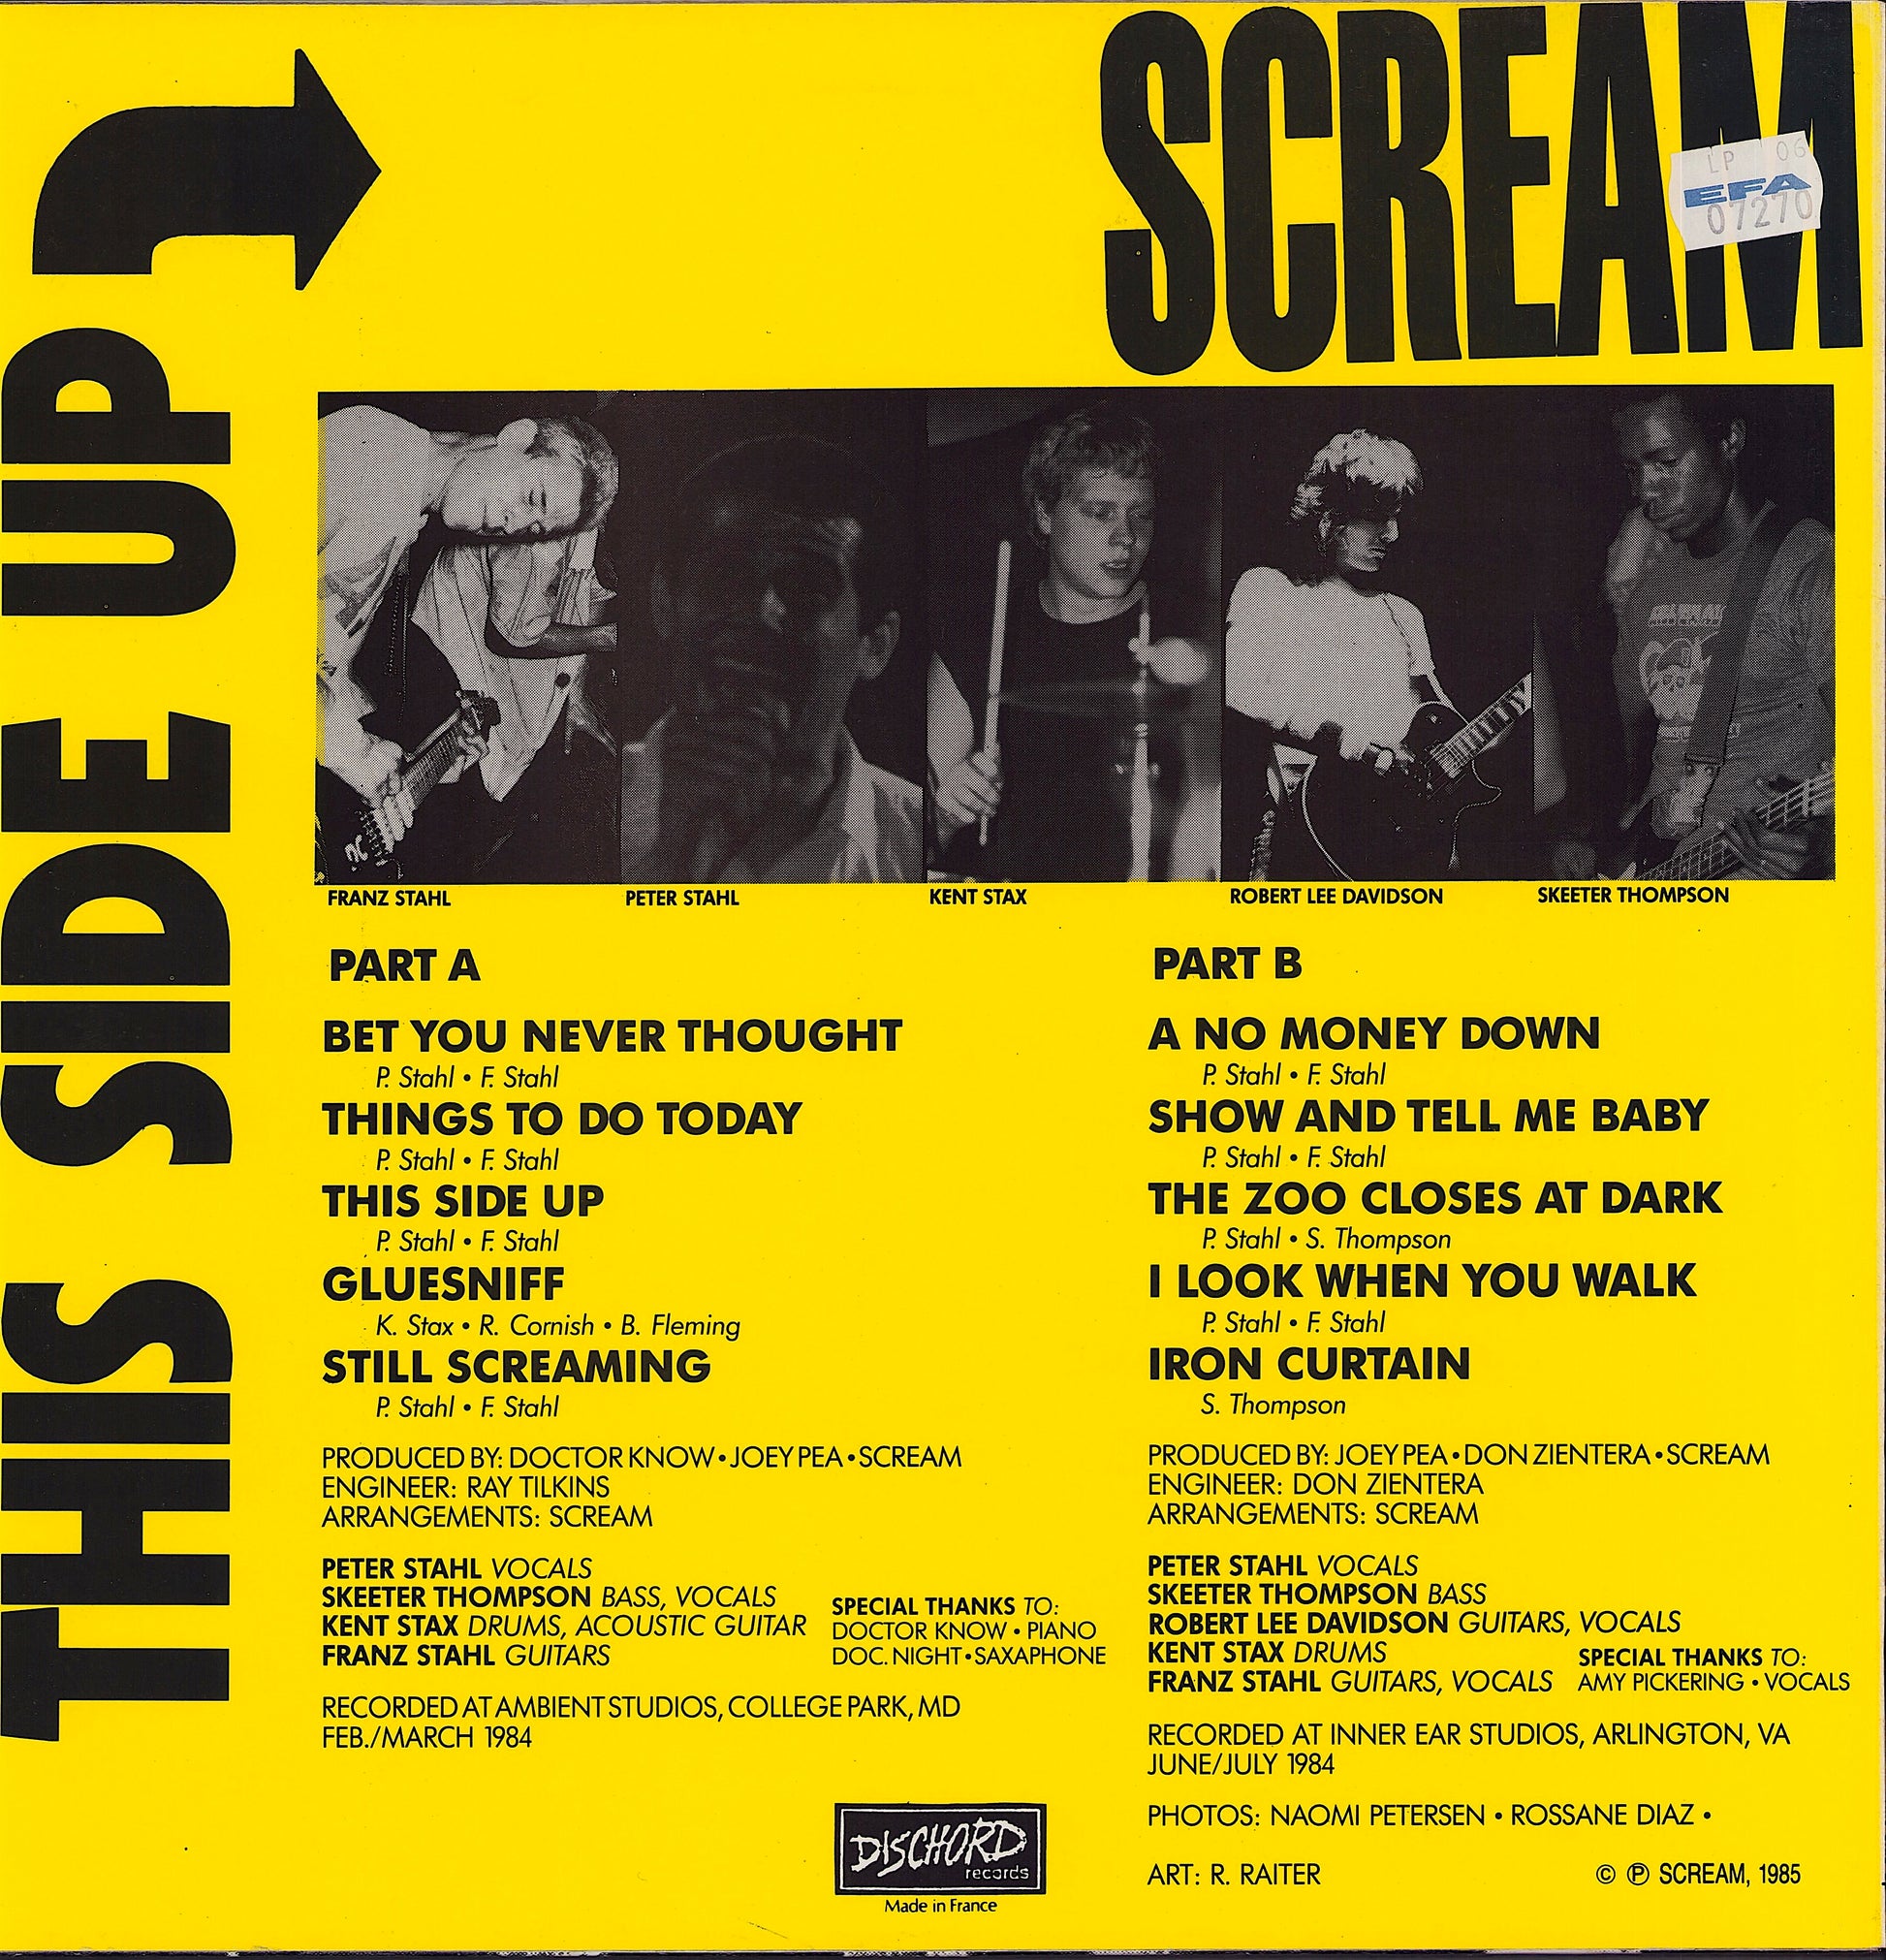 Scream - This Side Up Vinyl LP US